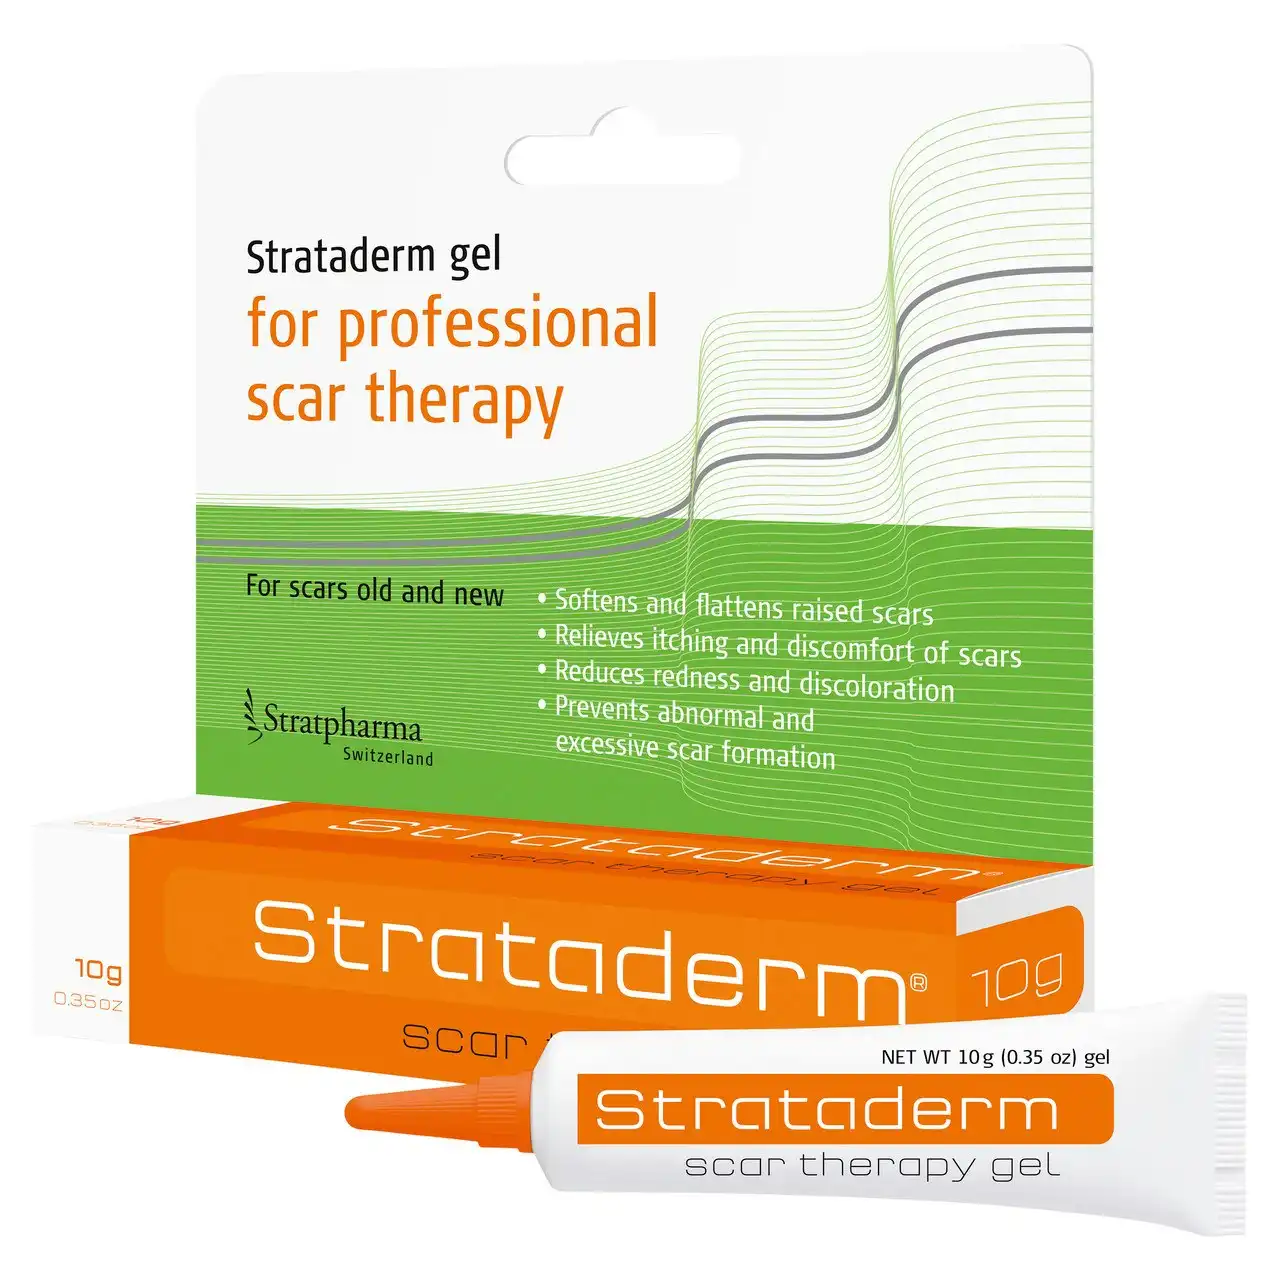 Strataderm Scar Therapy Gel 10g